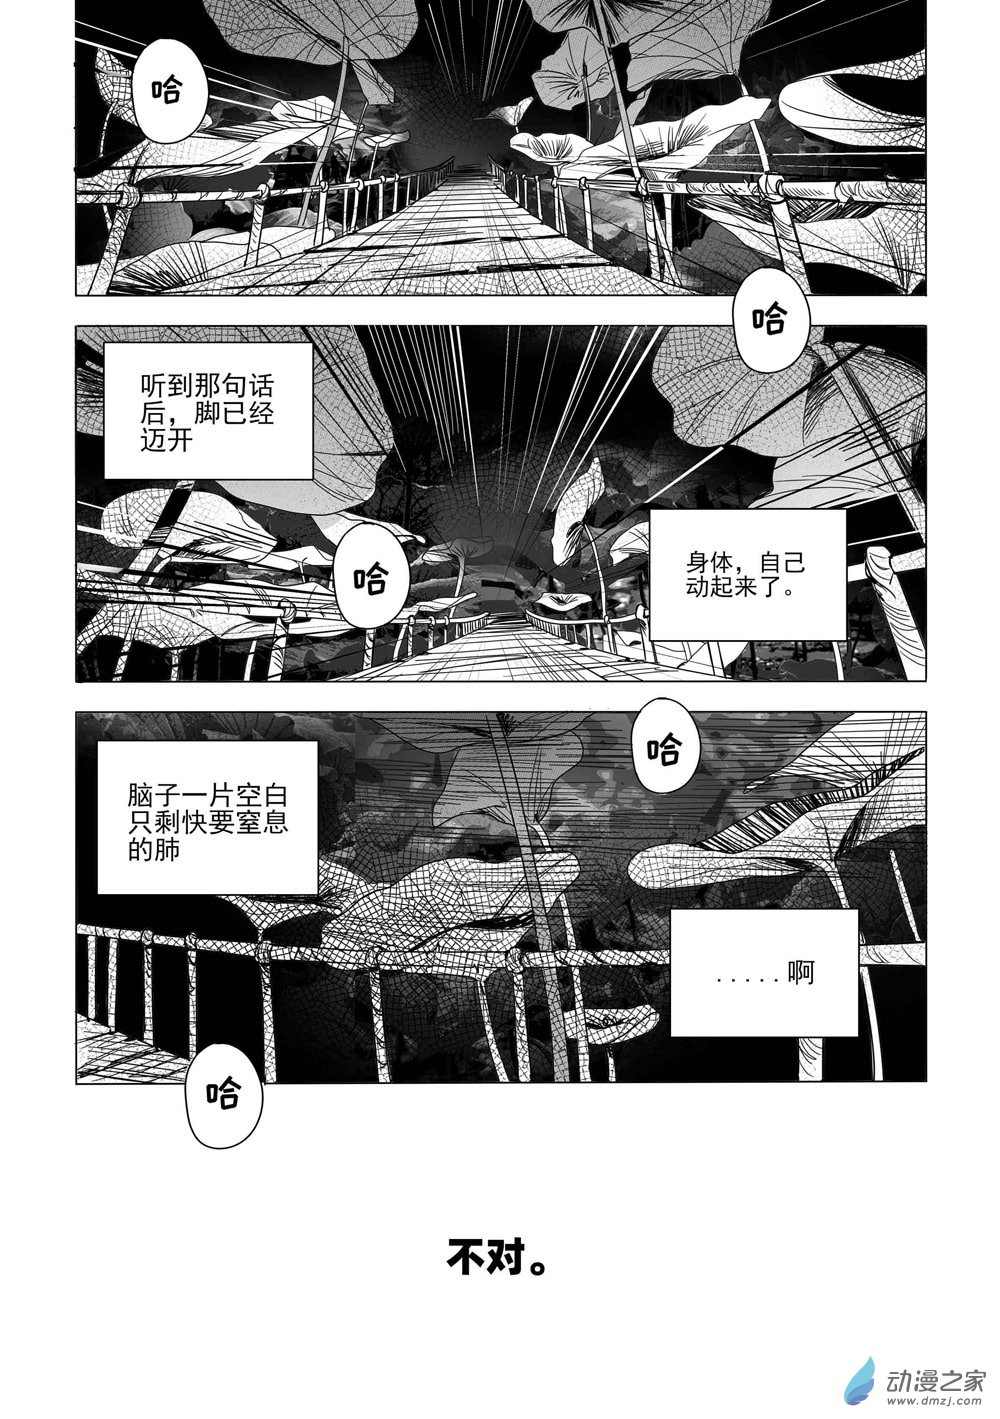 筆至量力漫畫市集 vol.1 - 12 藥兄在陽間-《異世界之旅》 - 5